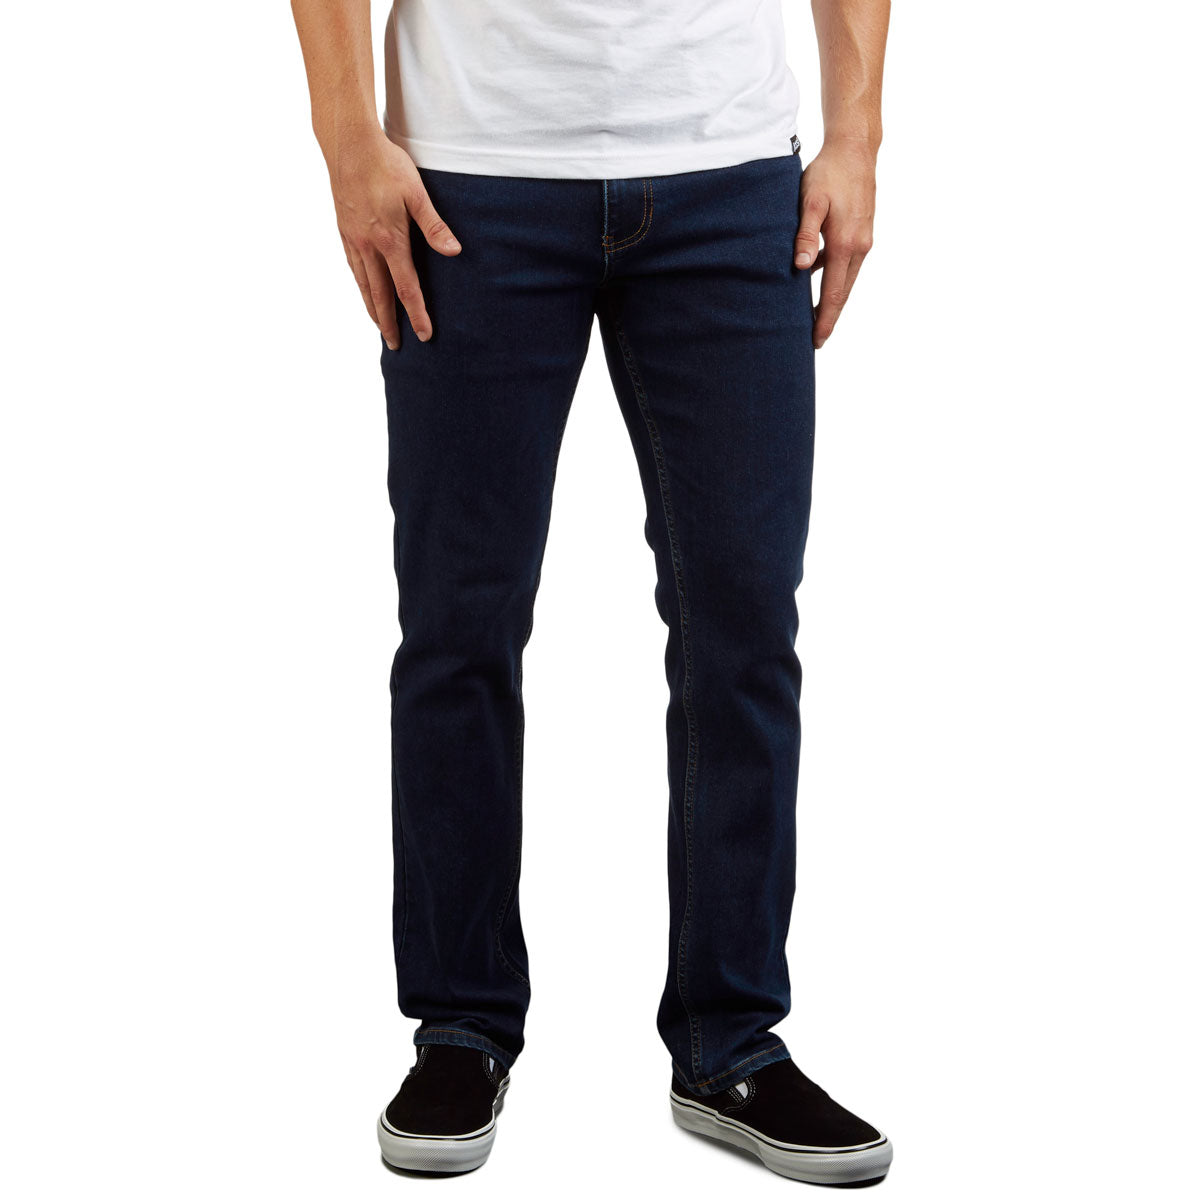 CCS Standard Plus Slim Denim Jeans - Indigo image 1